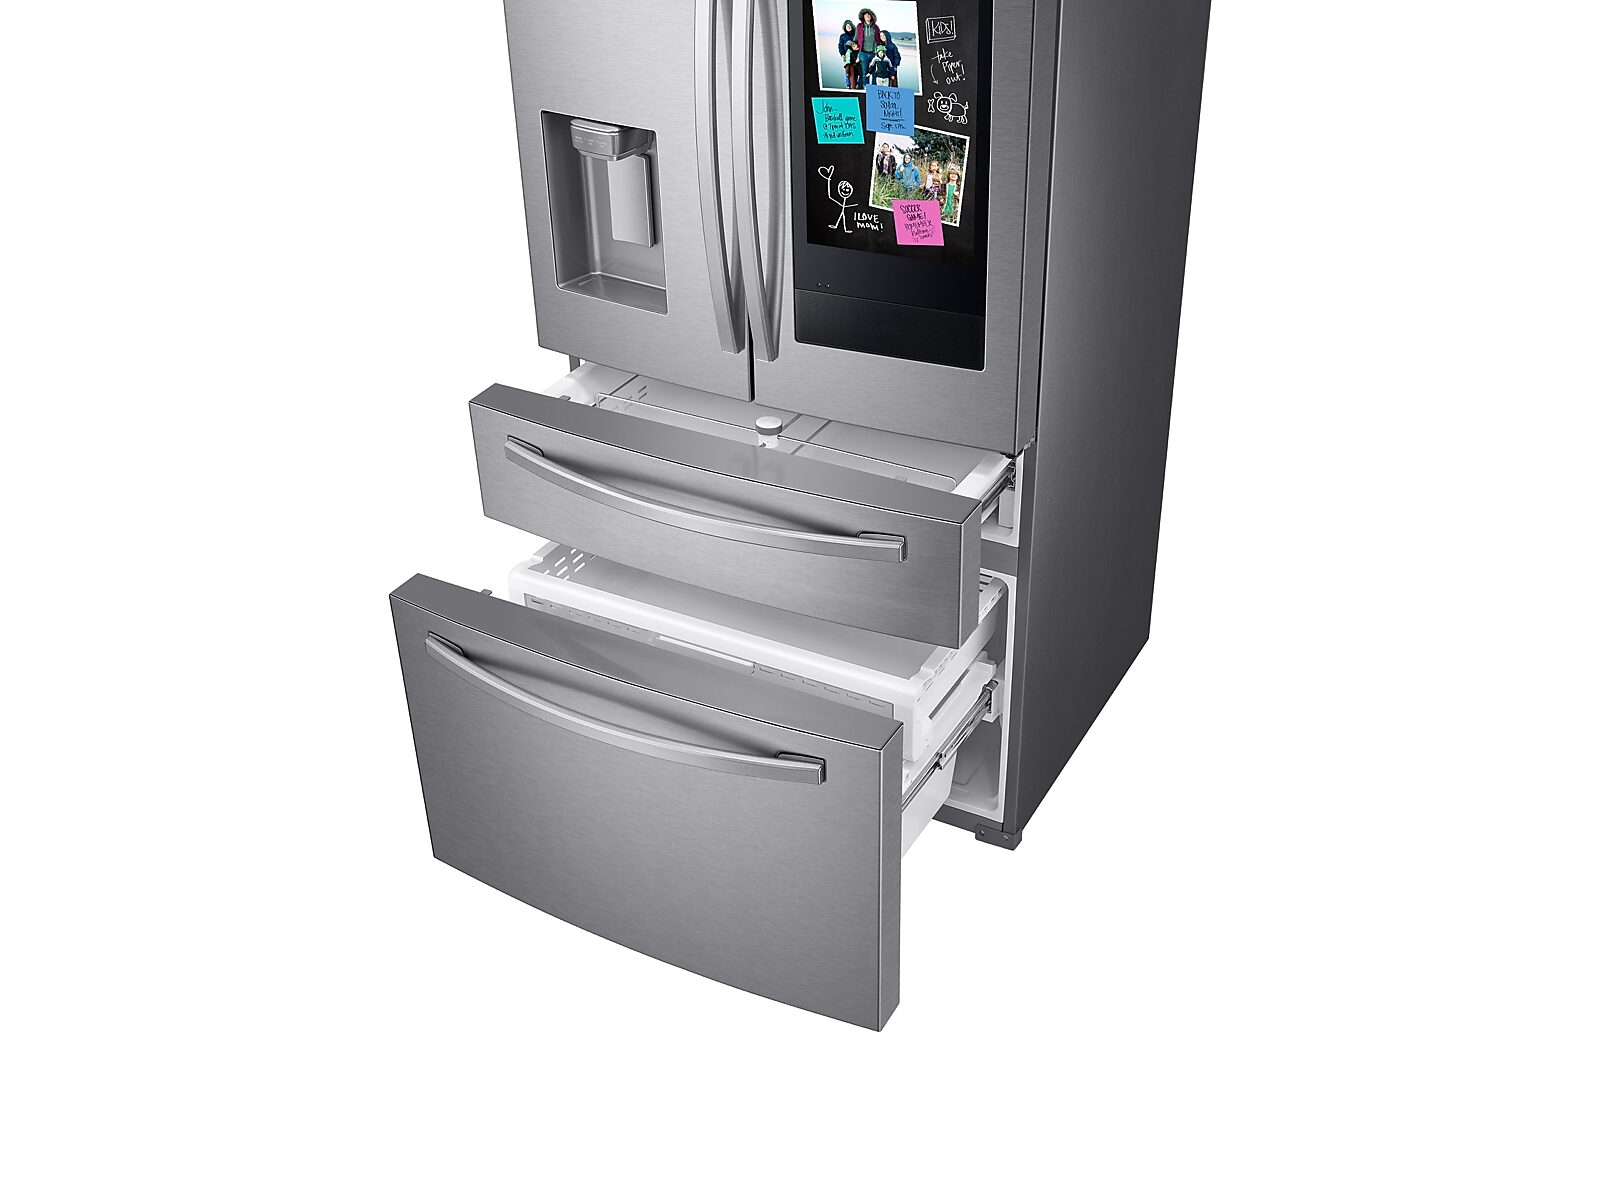 Samsung 28 cu. ft. 4-Door French Door Refrigerator with 21.5